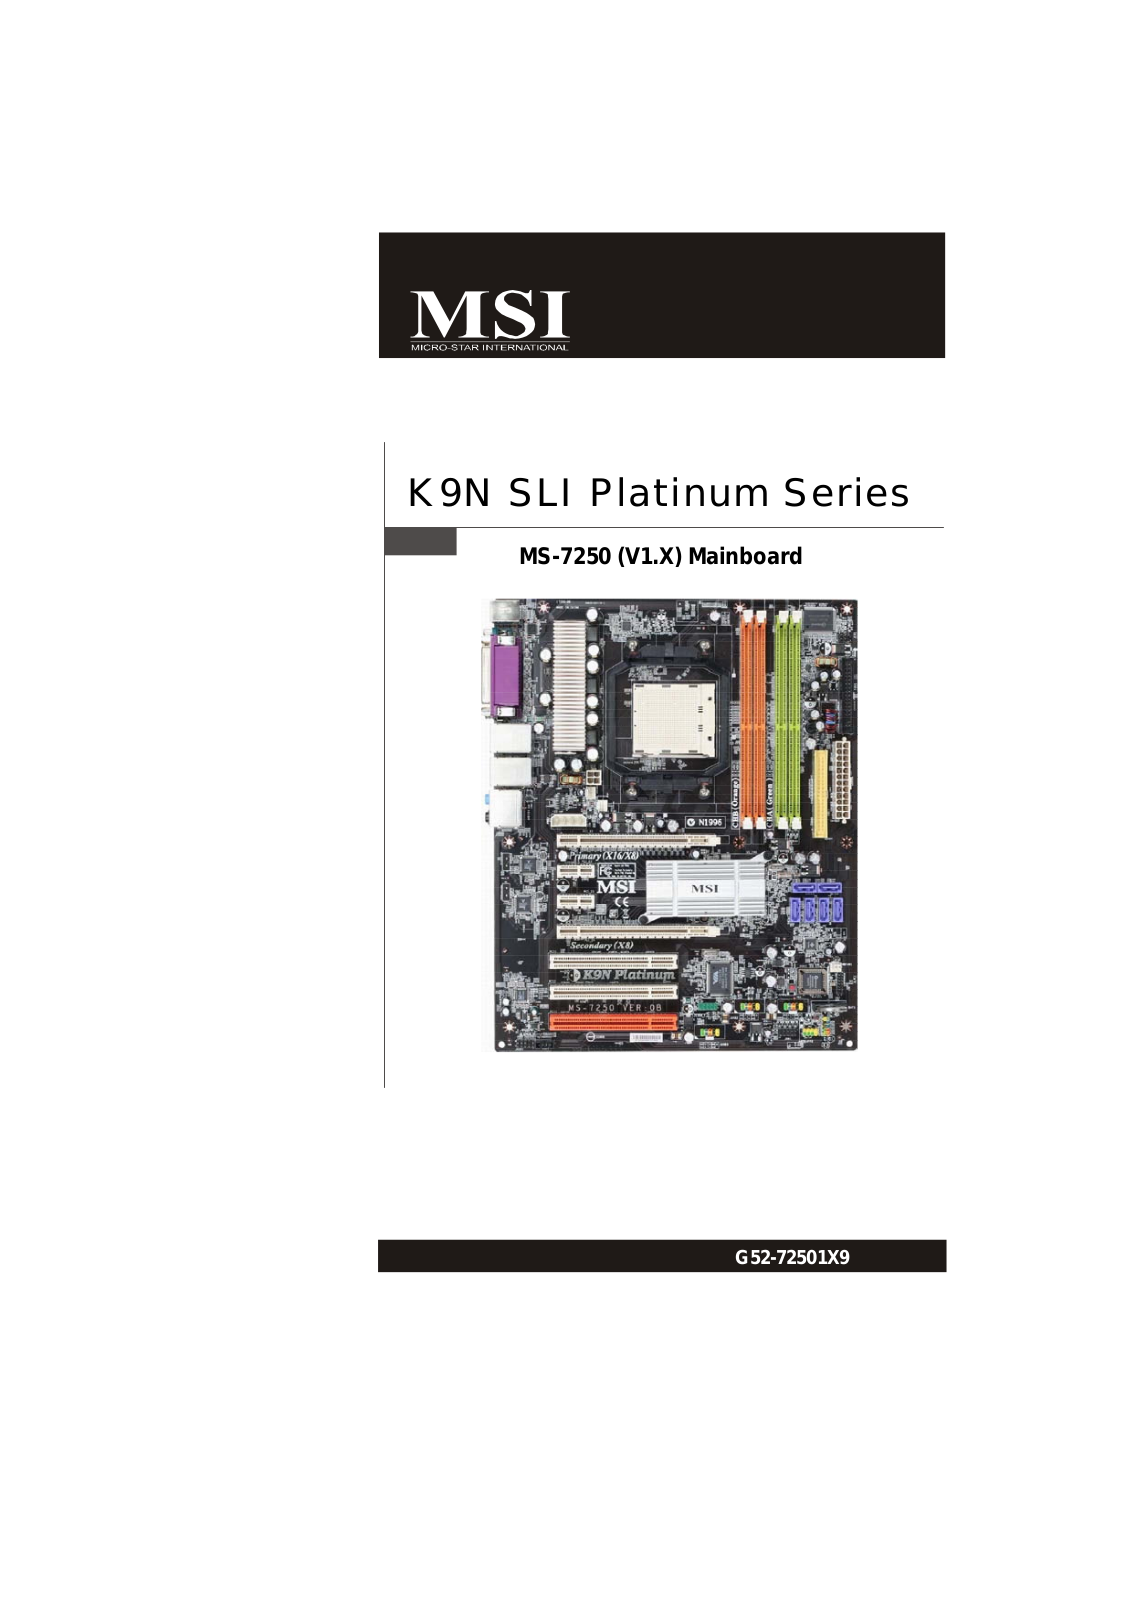 MSI K9N SLI Platinum User Manual